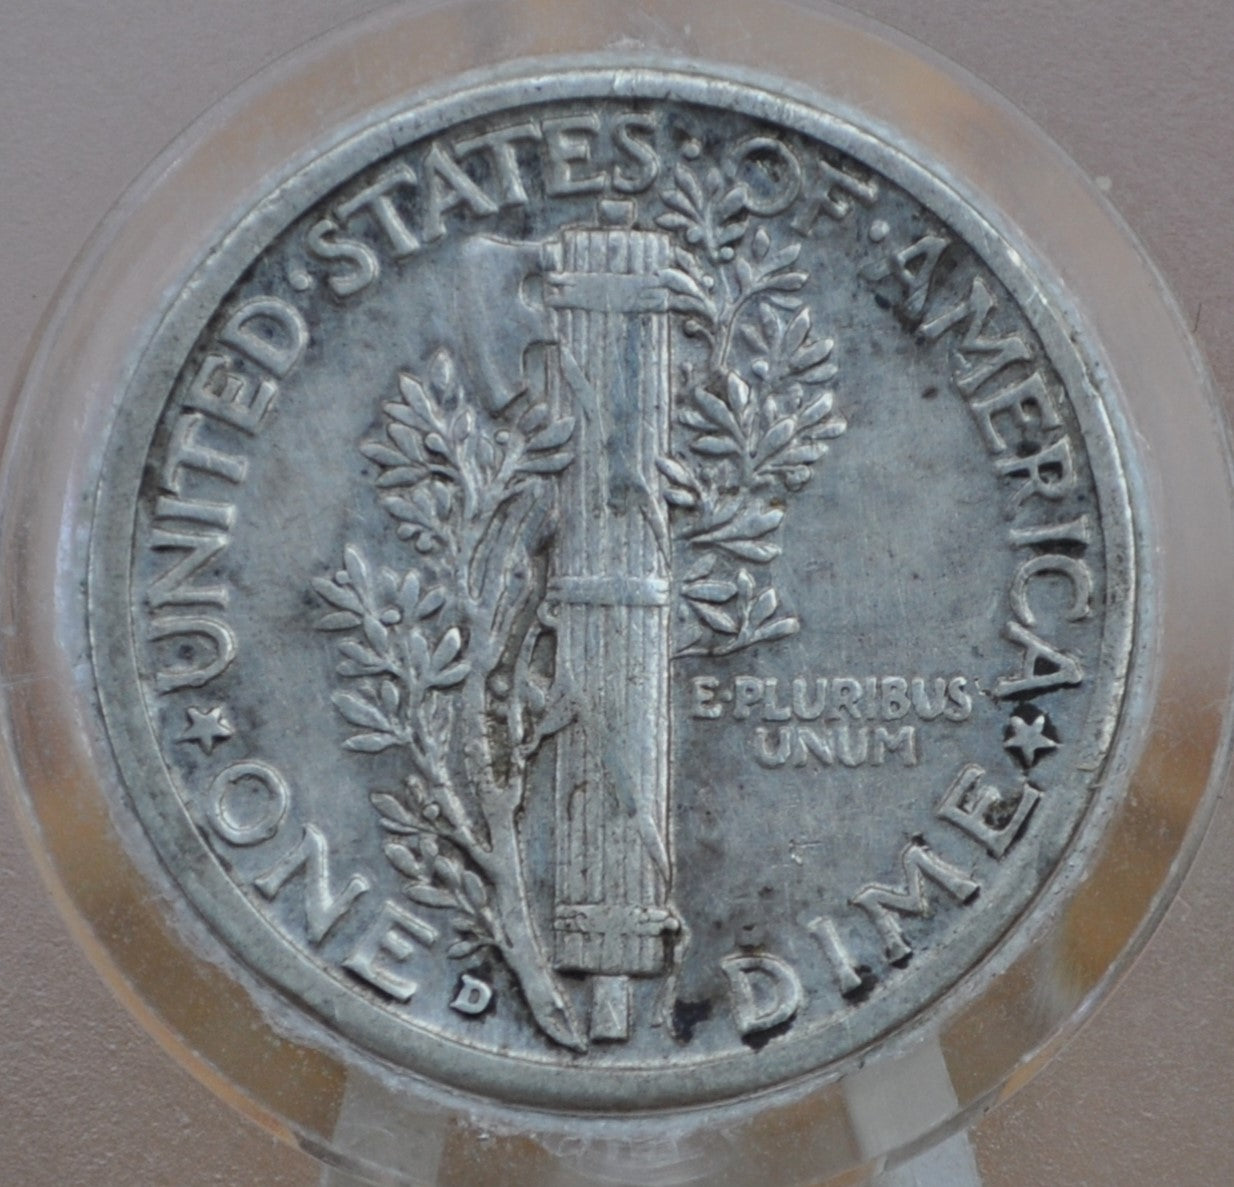 1934-D Mercury Dime - AU Detail, Slightly Off-Center - Denver Mint - Winged Liberty Head Dime 1934D - Silver Dime 1934 D